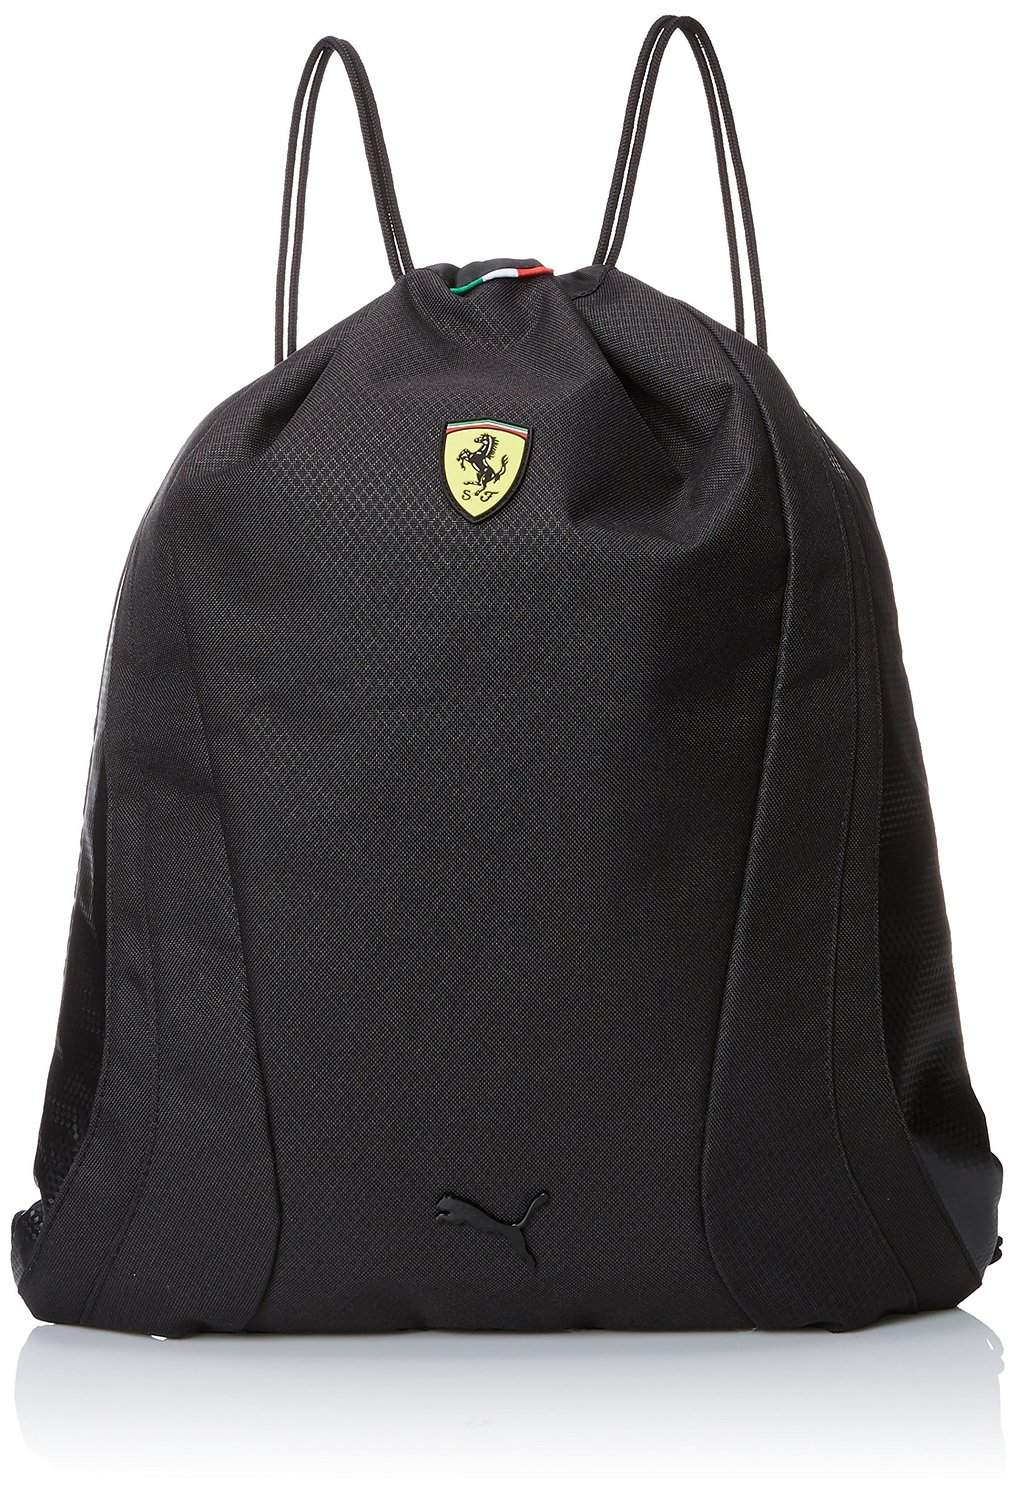 Puma Black Ferrari Replica Gym Sack Drawstring Bag [073172] | eBay